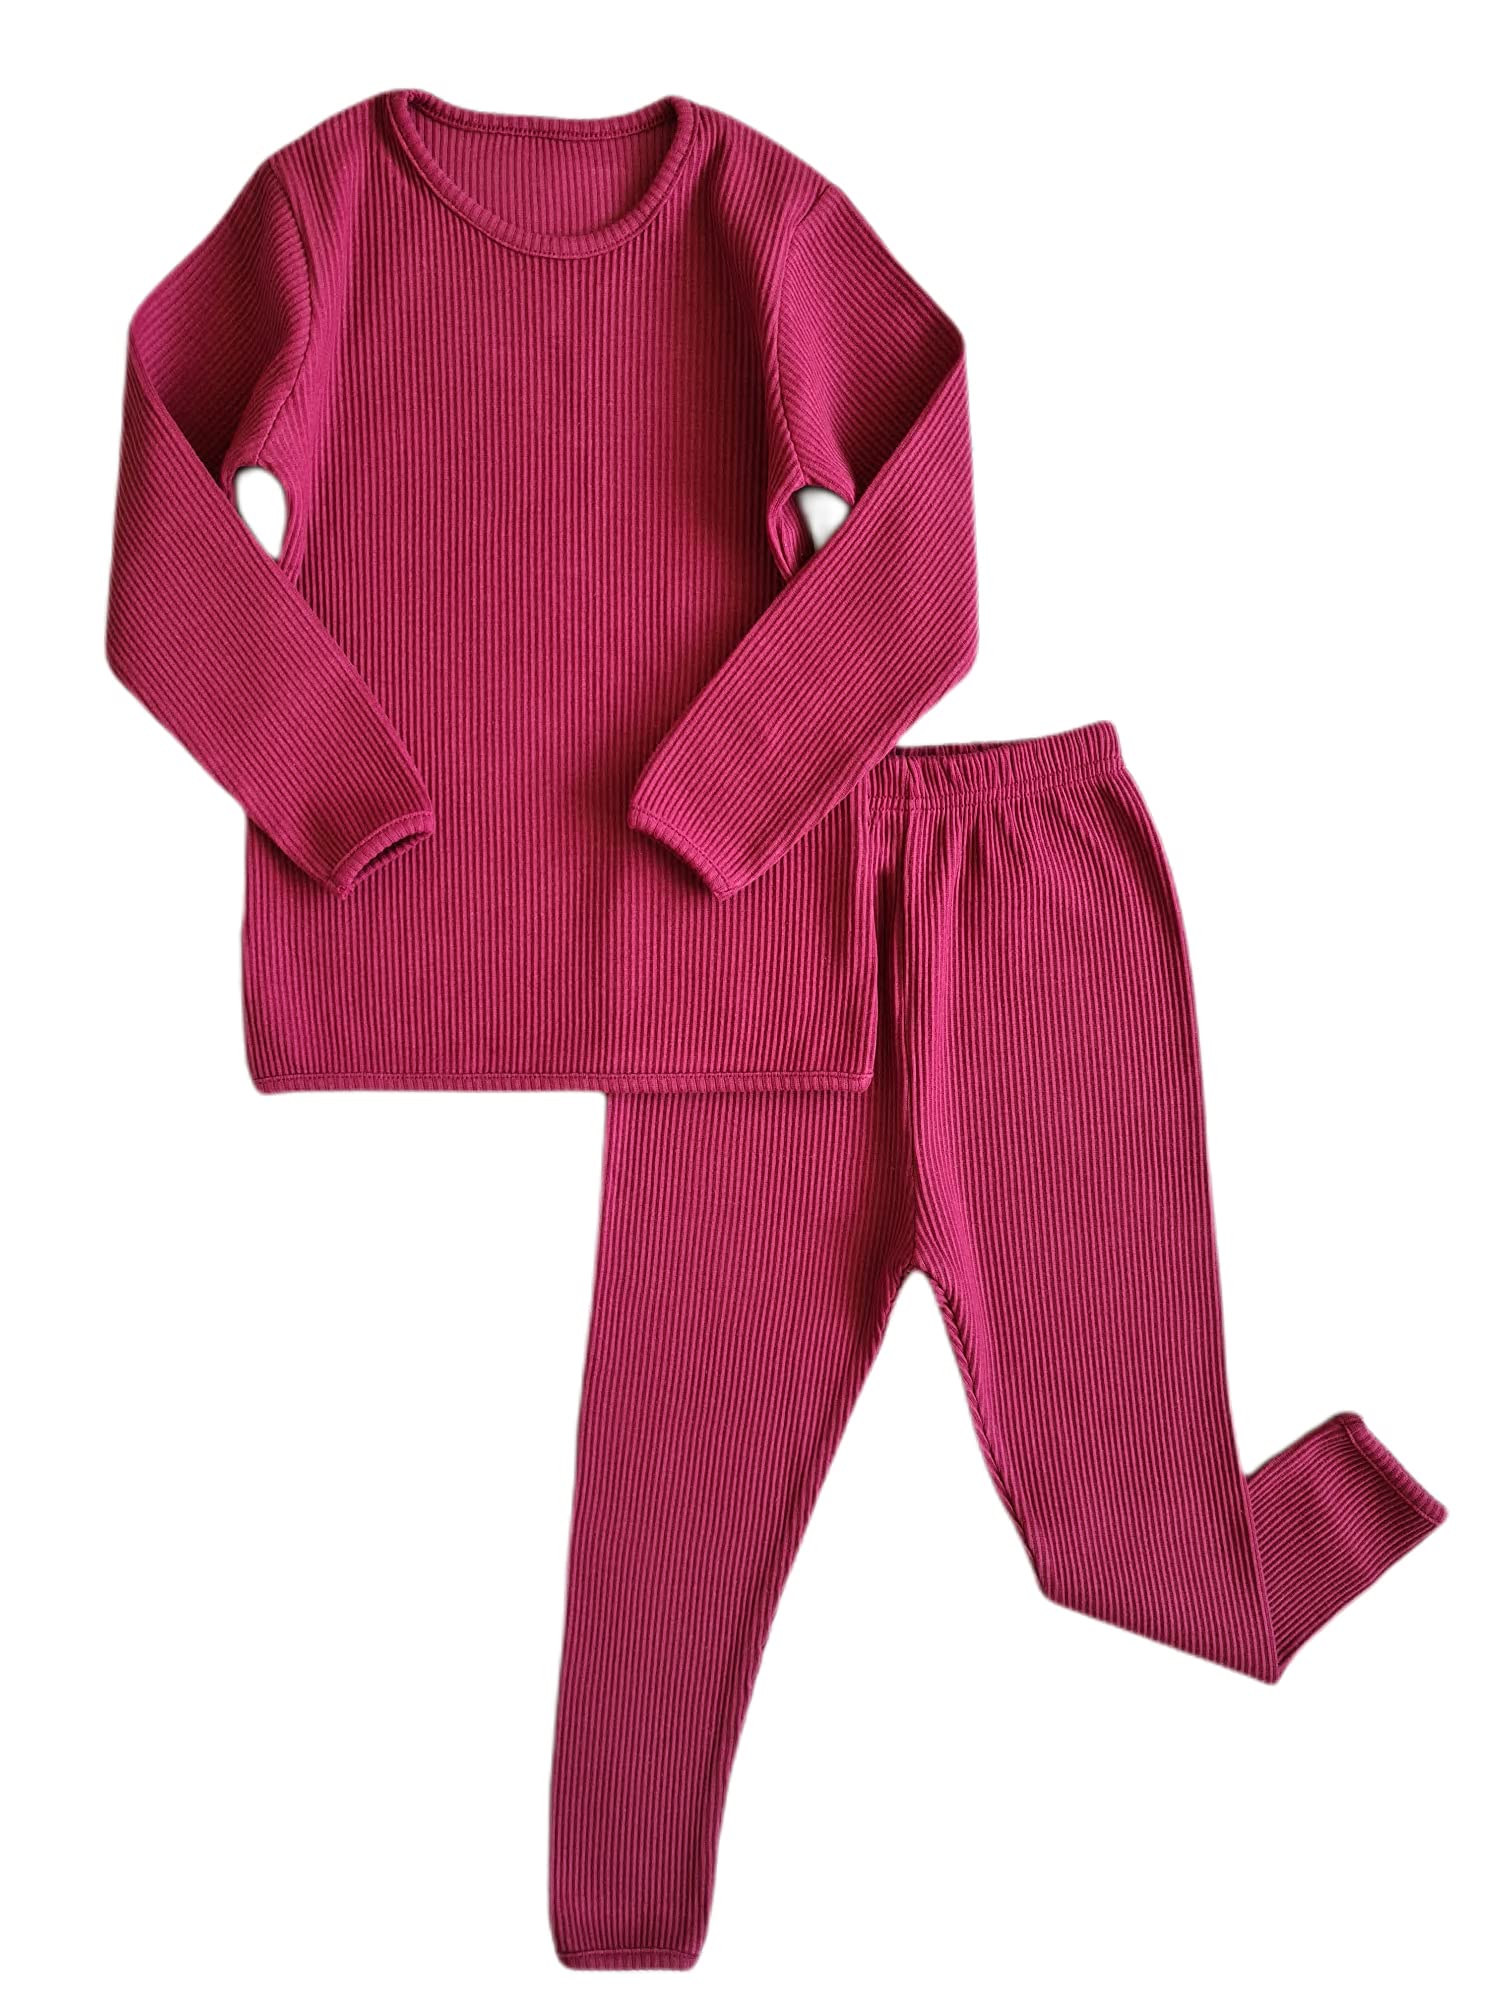 DreamBuy 20 Farben Gerippter Pyjama/Trainingsanzug/Loungewear Unisex Jungen und Mädchen Pyjamas Babykleidung Pyjamas für Frauen und Herren Pyjamas (L, Rotweinrot)